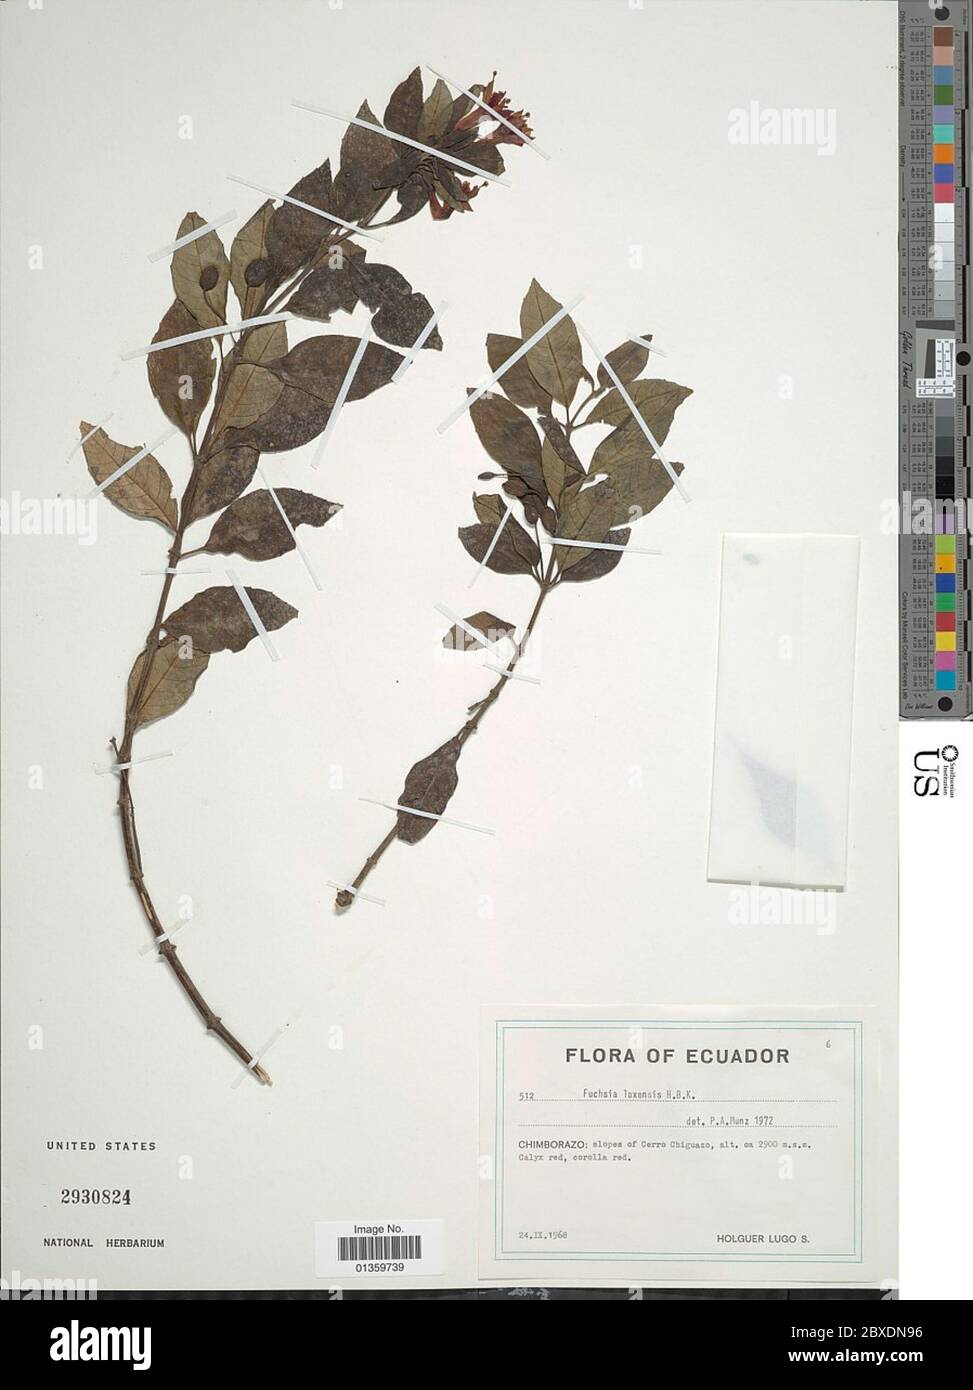 Fuchsia loxensis Kunth Fuchsia loxensis Kunth. Stock Photo